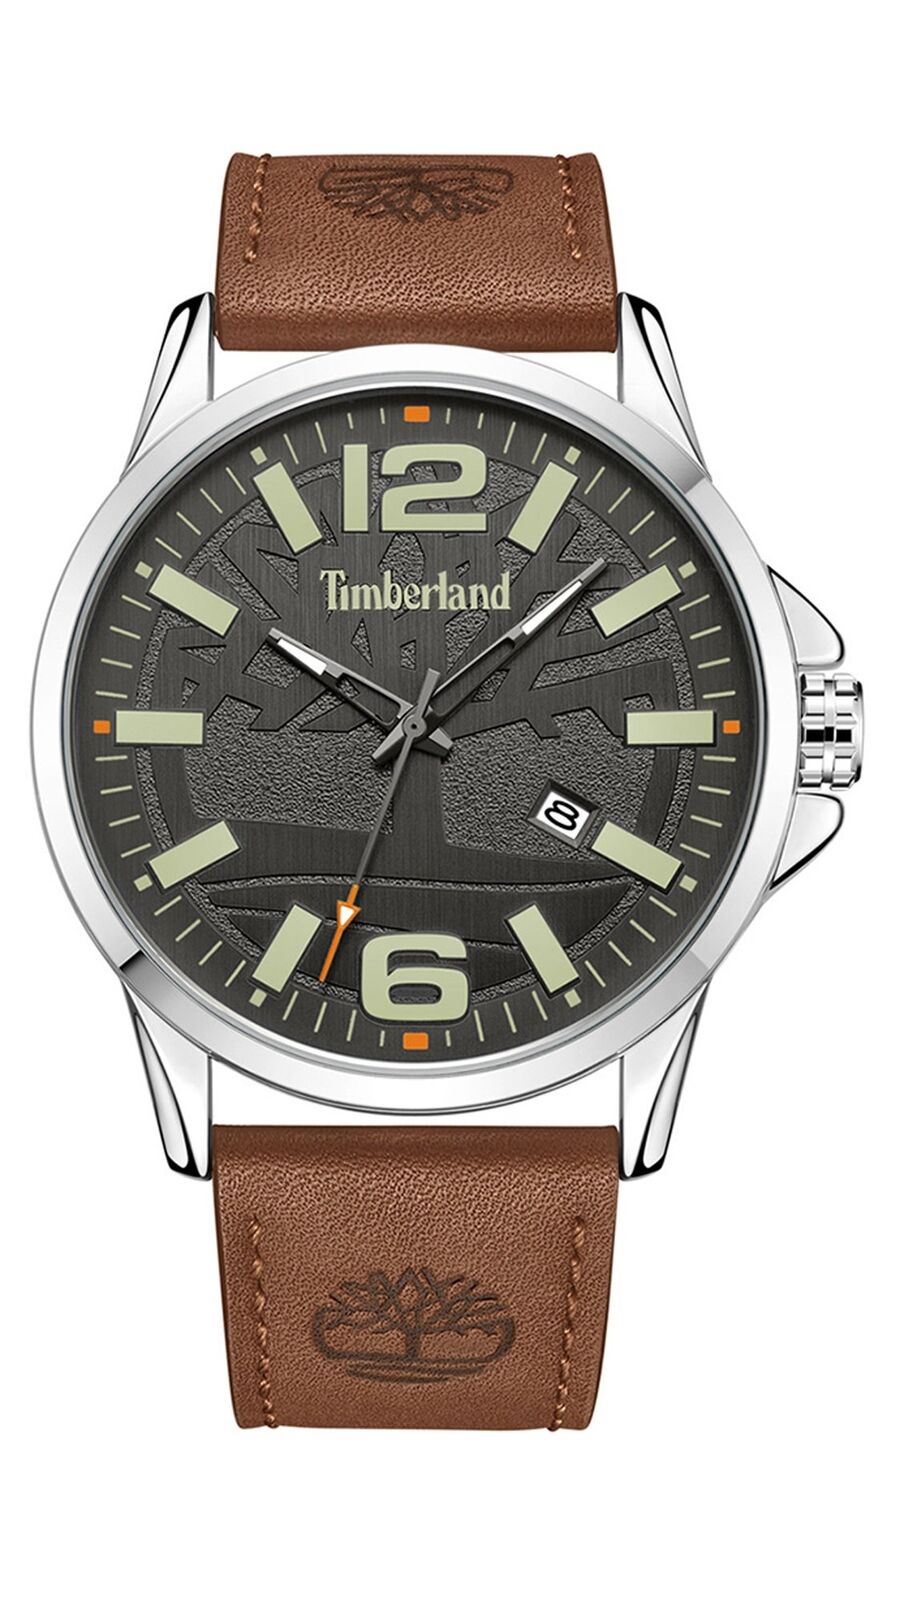 Arturo casete Disminución Timberland Bernandston date brown watch TDWGB2131801 | eBay